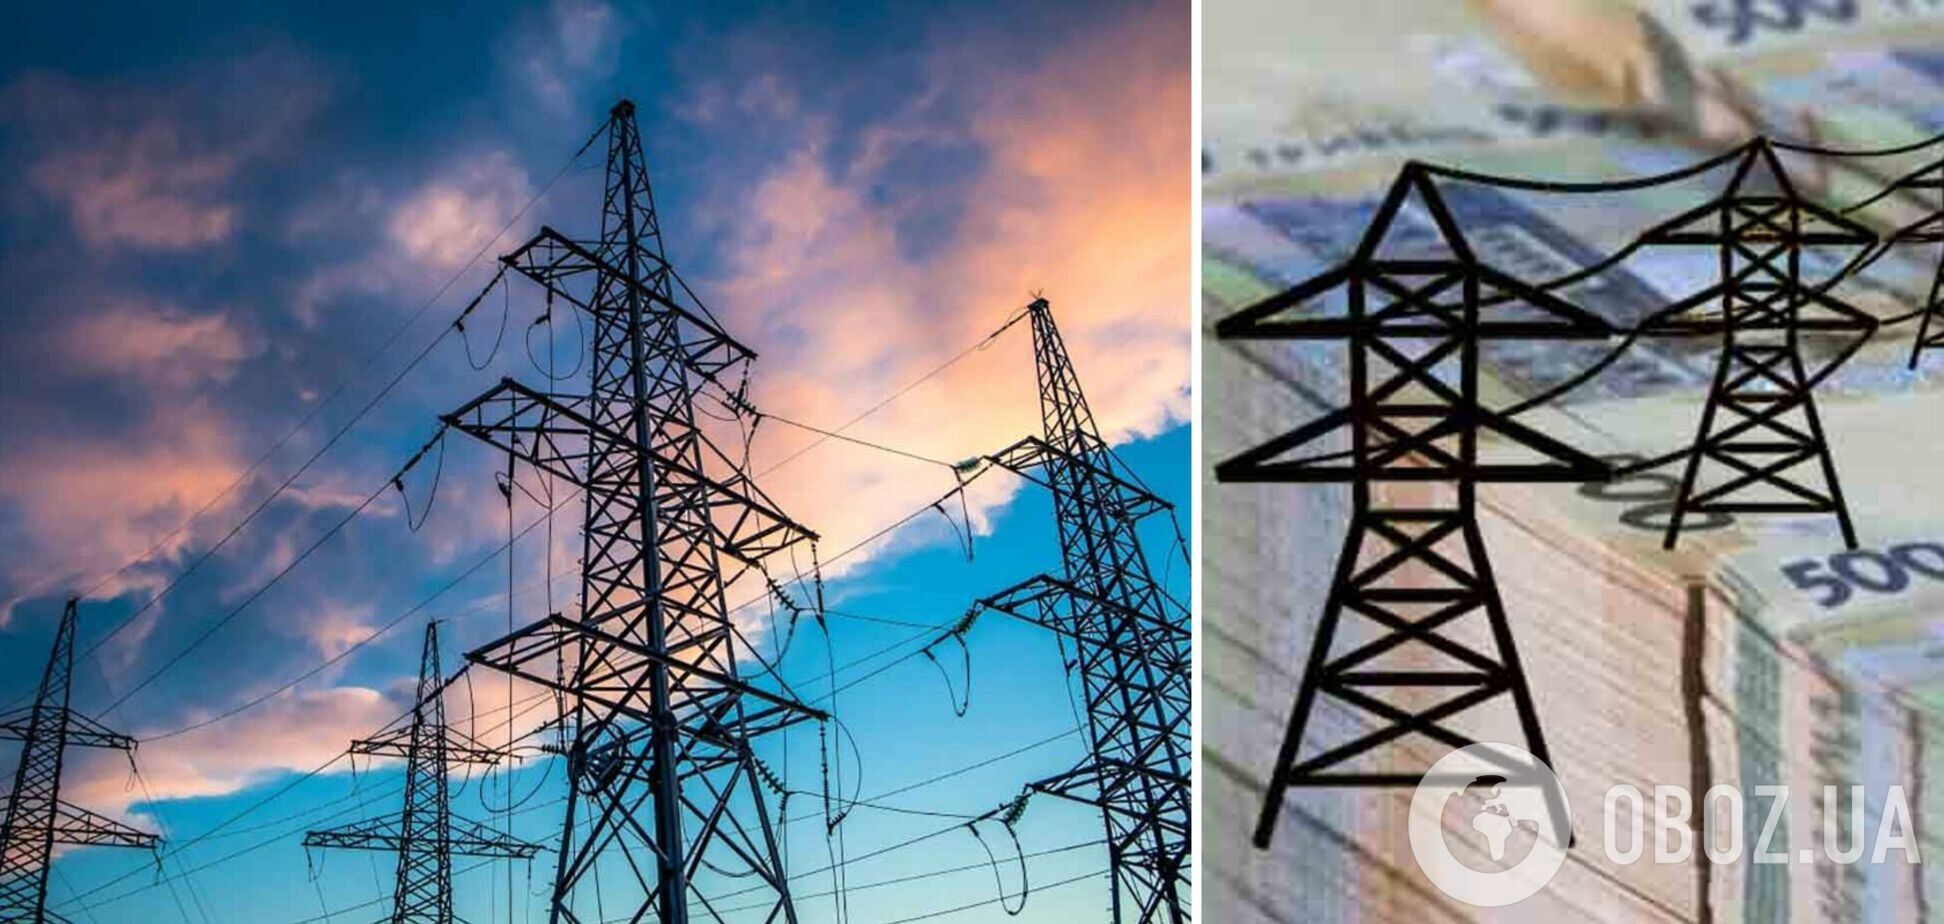 ДТЭК и Дія упростили заключение договора на распределение электроэнергии